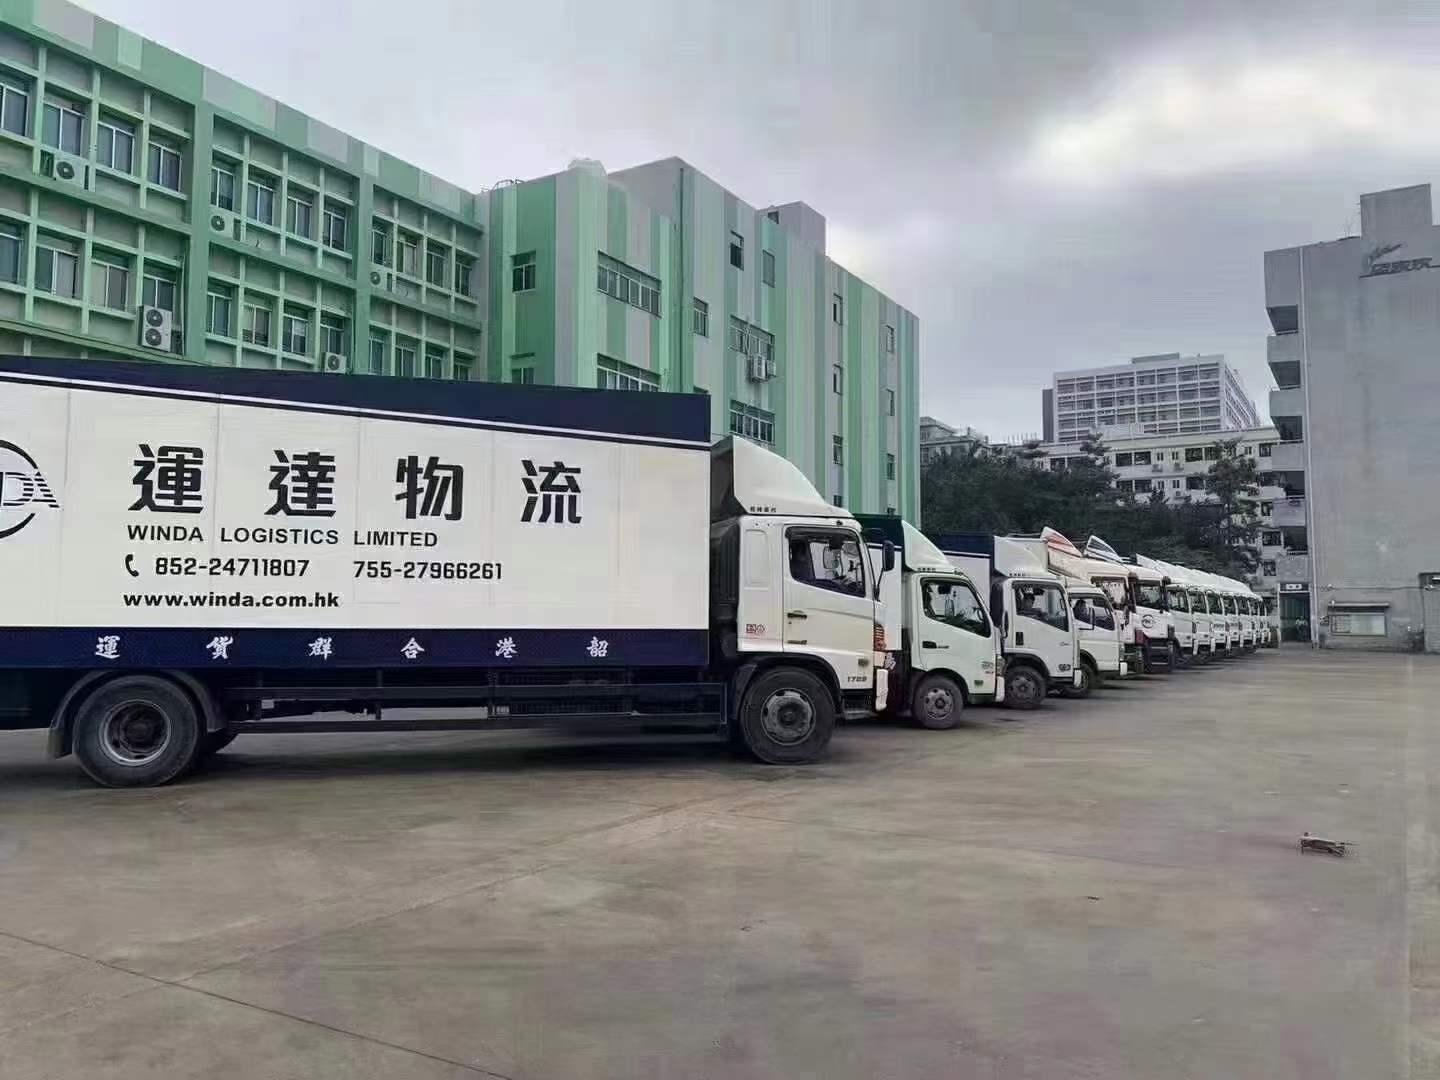 建築材料運輸香港 機械設備物流香港 內地到香港大件物流 2